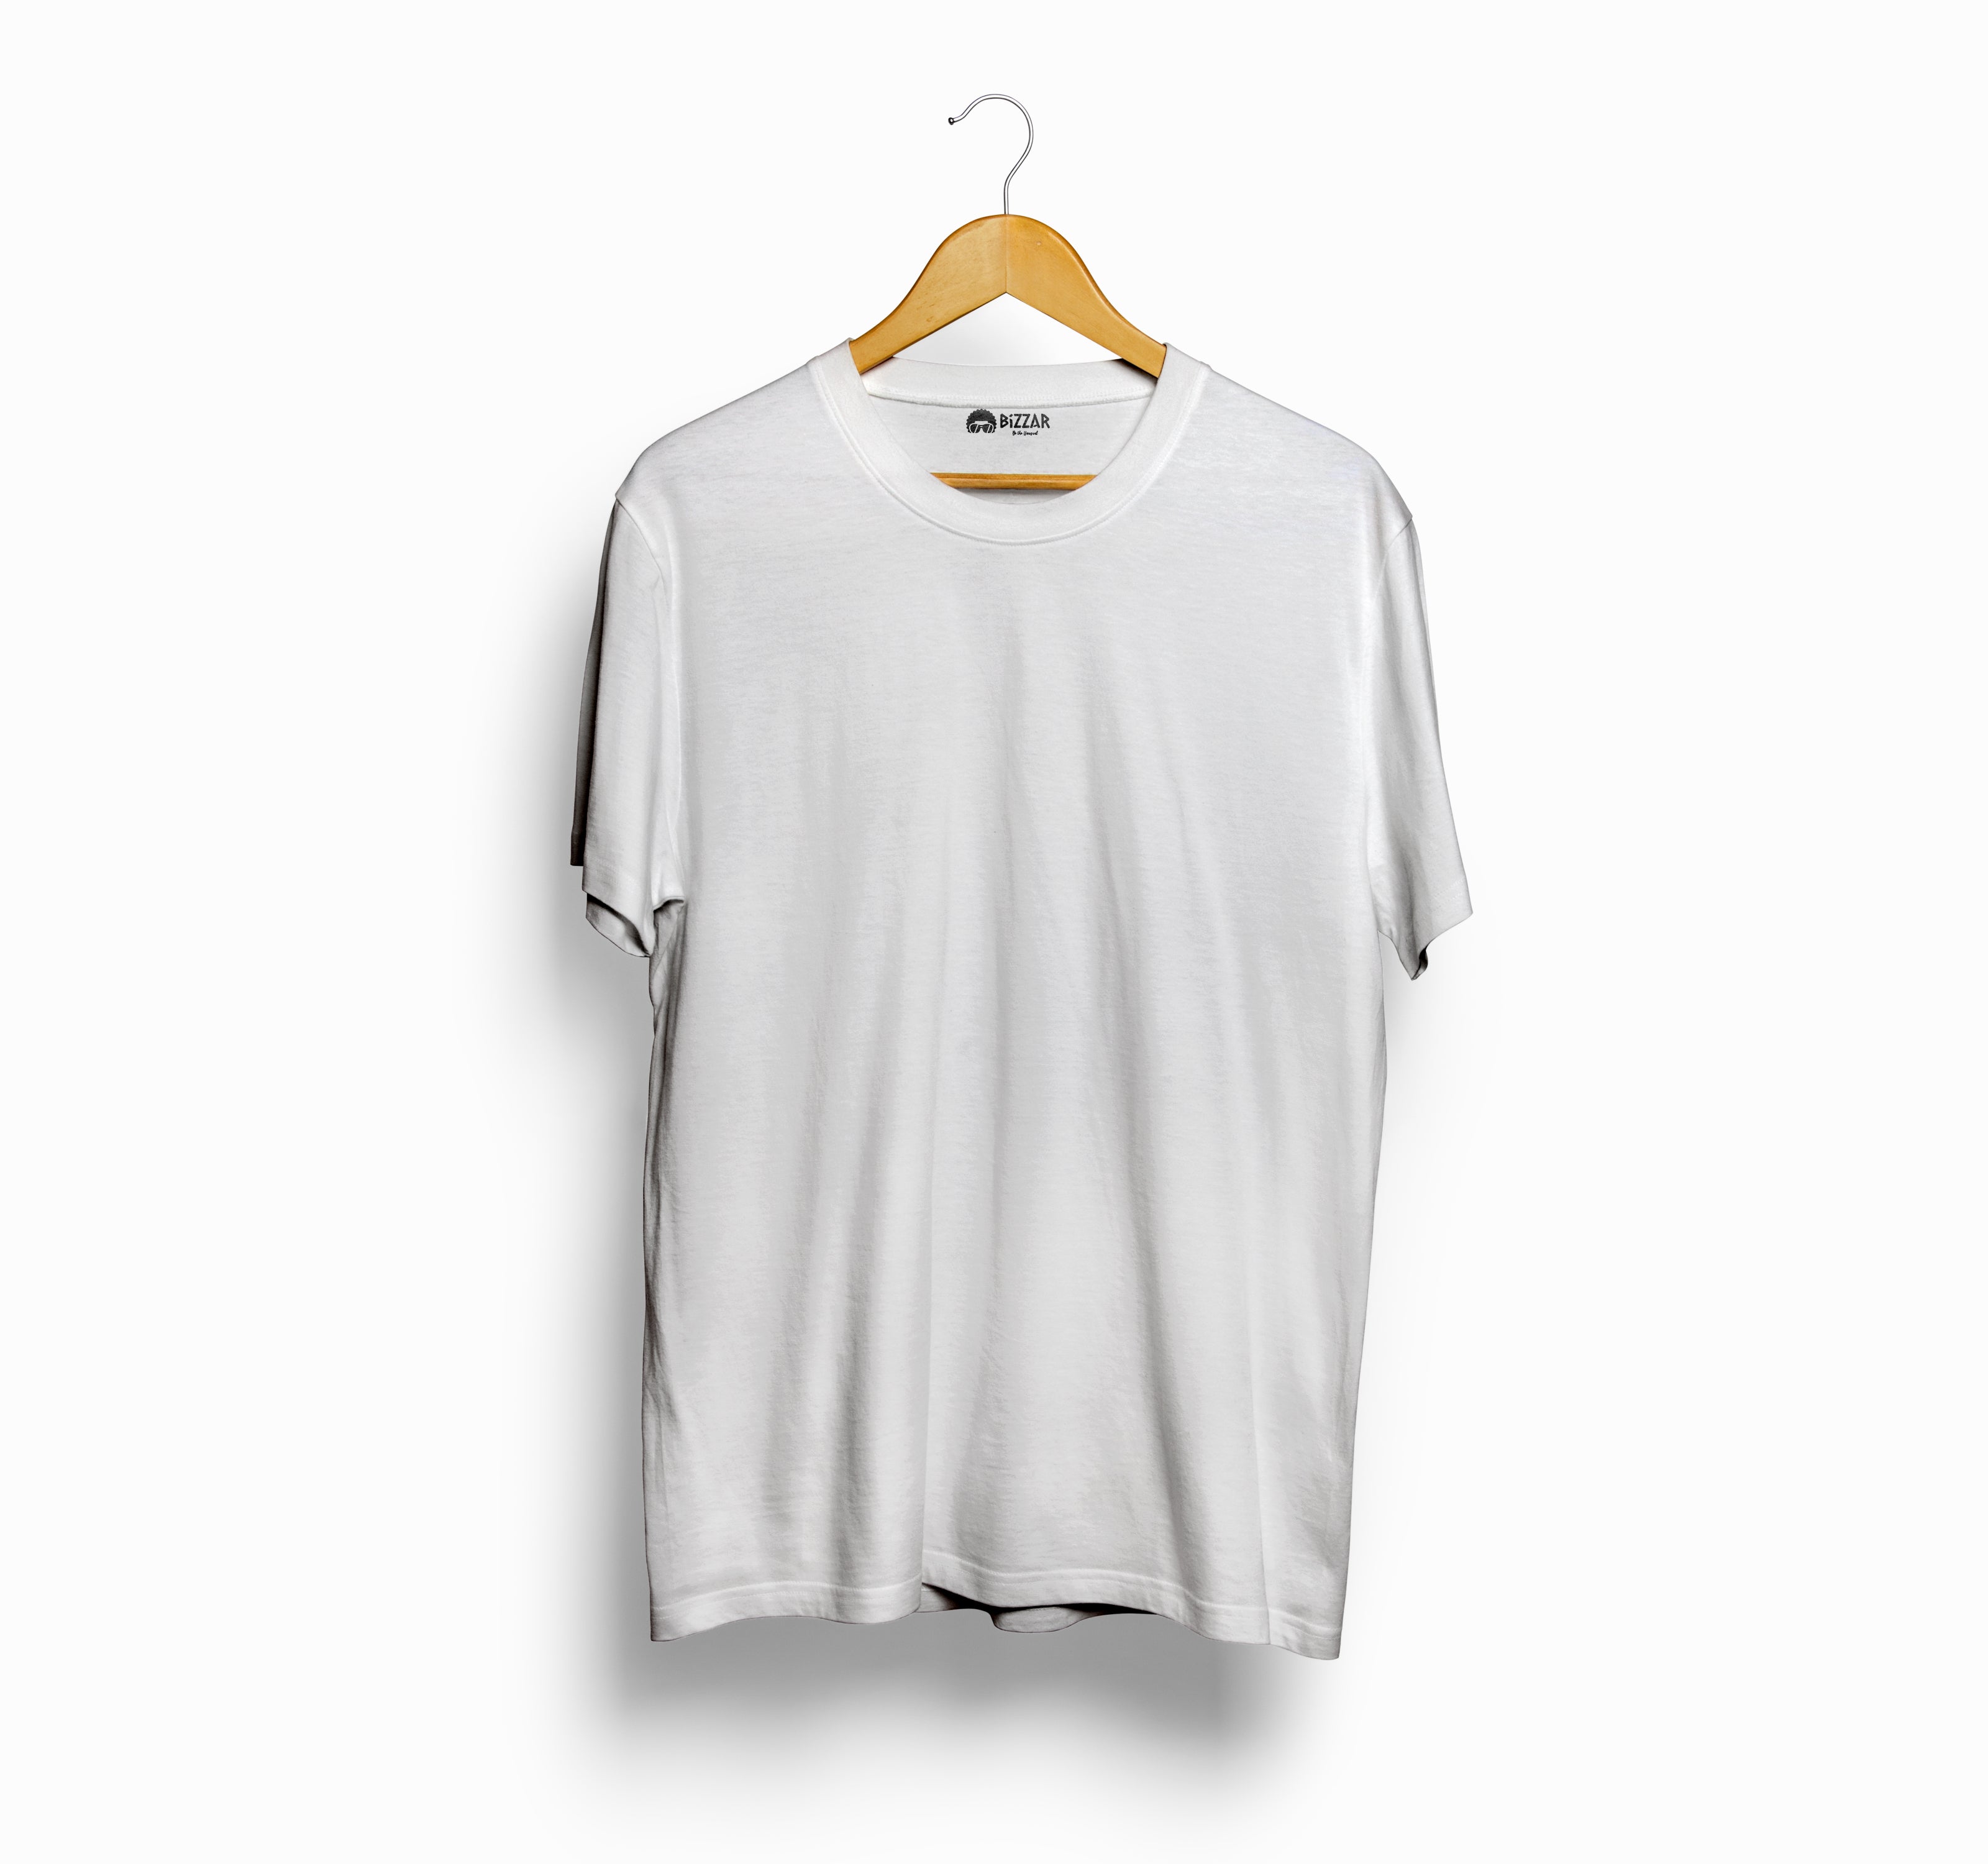 Bizzar's White T-Shirt